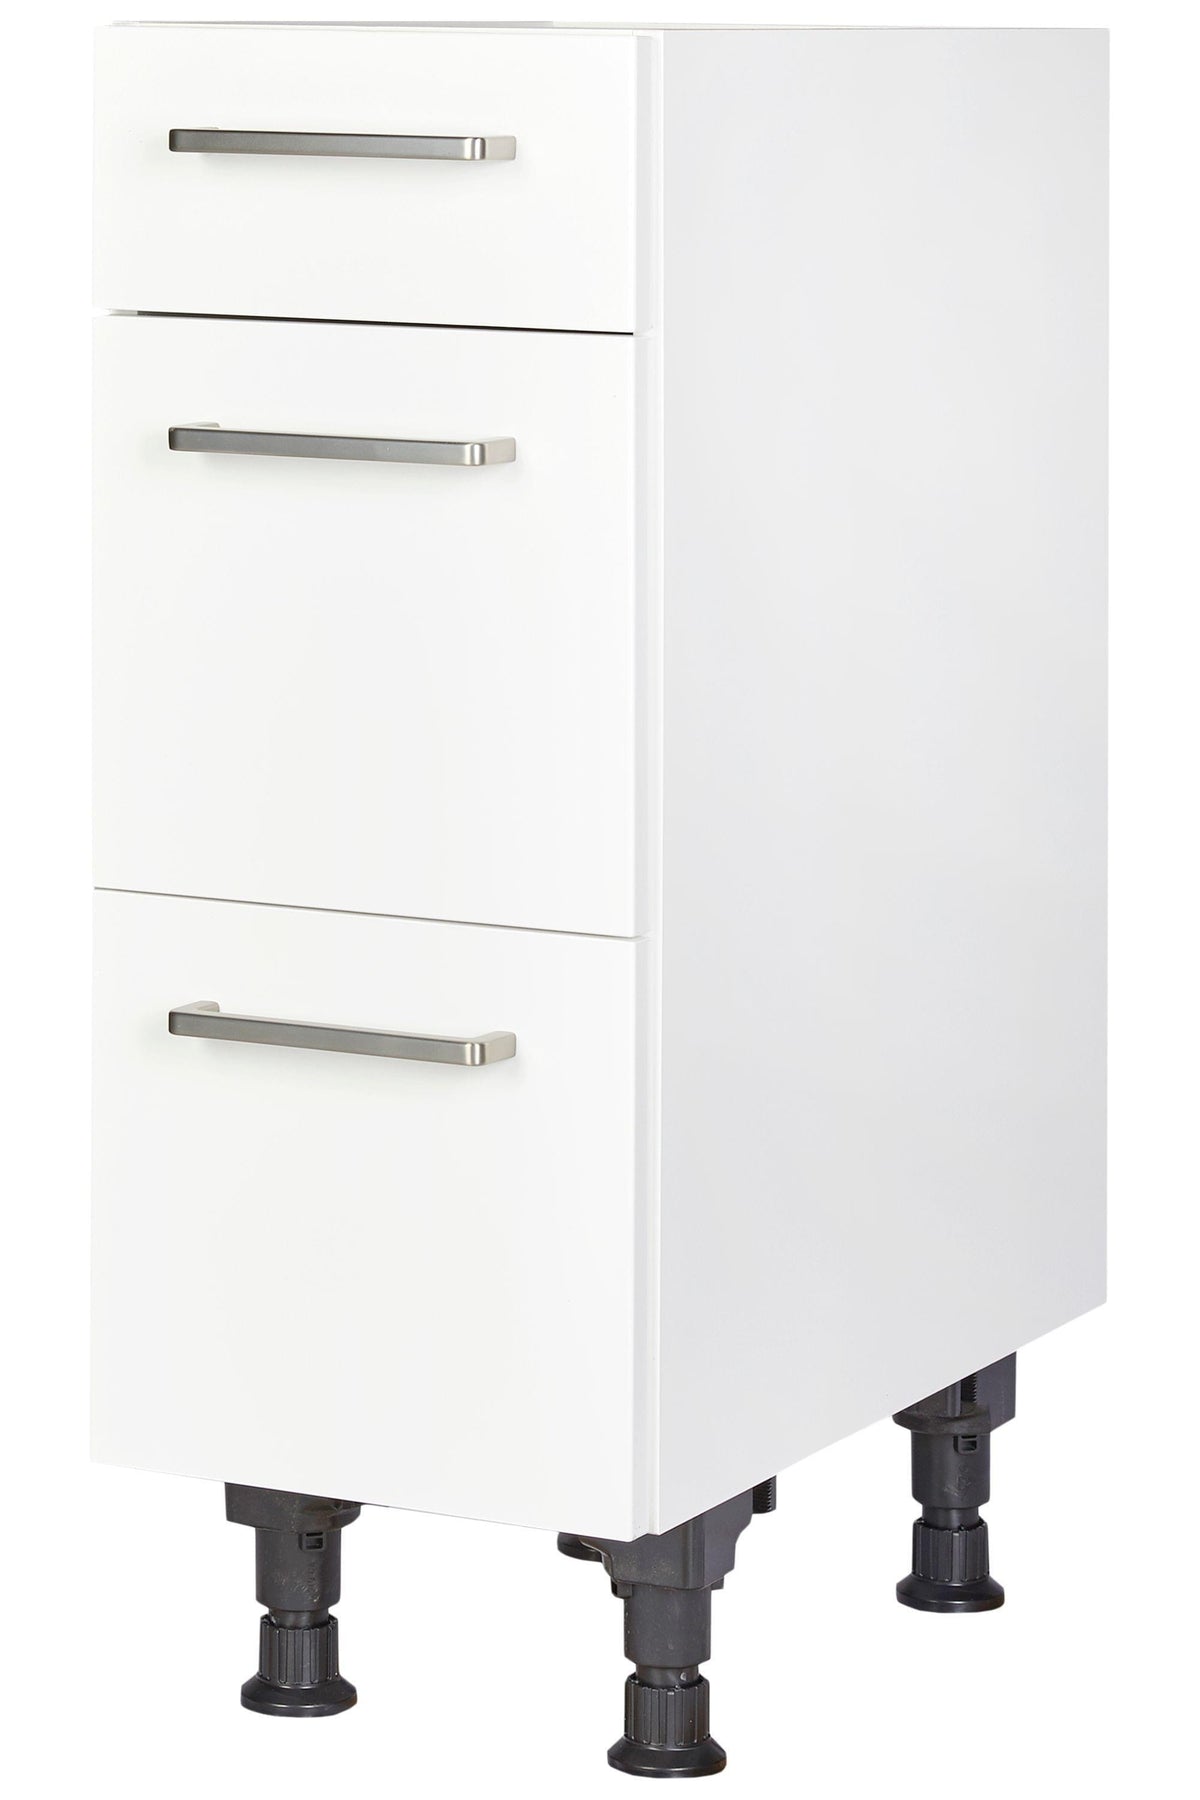 Verkauf heute Kitchen base cabinet 30cm in white Kitchen with Kitchen drawers block